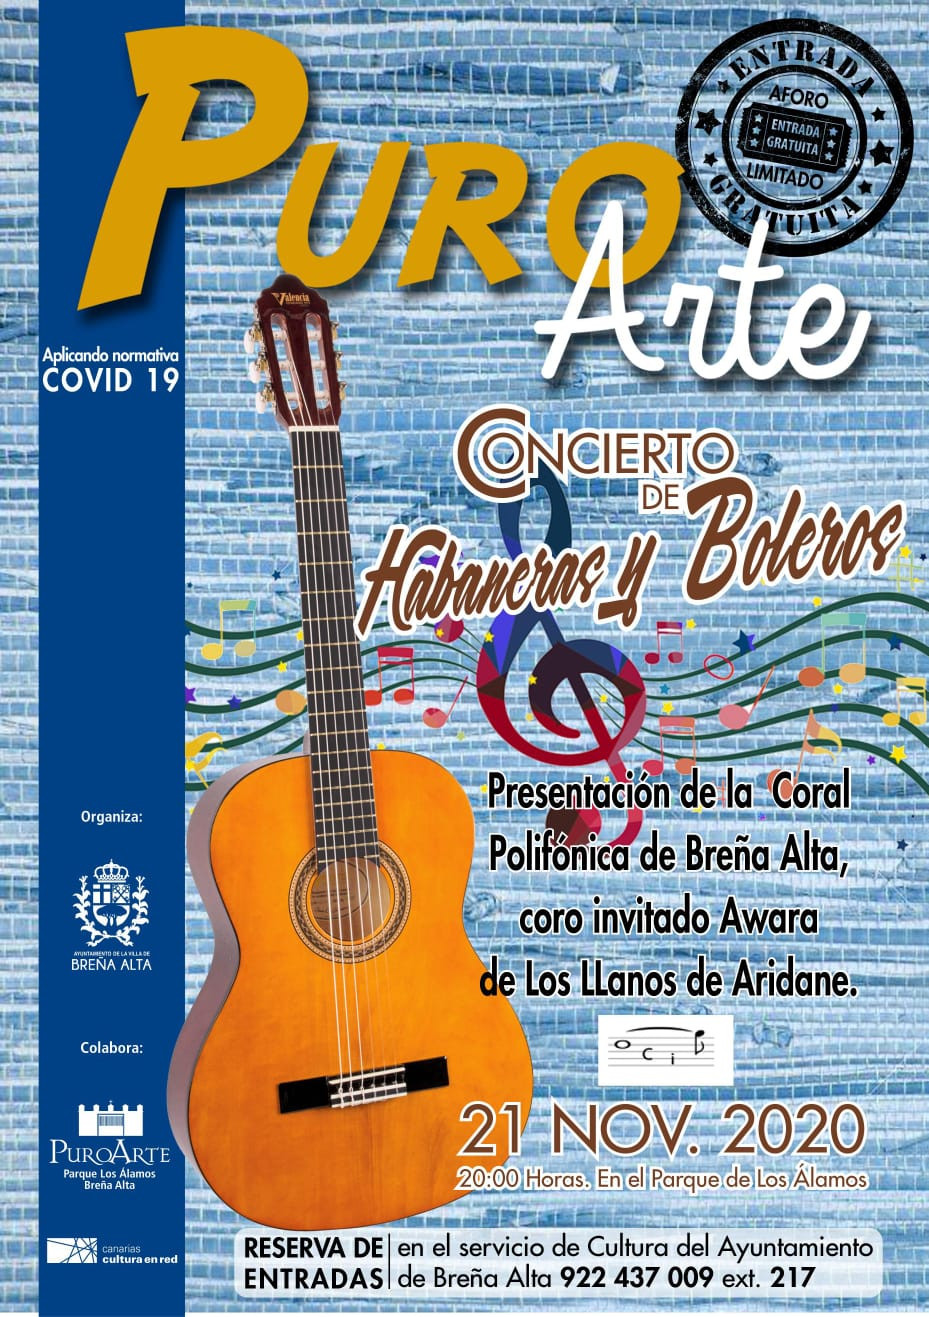 Cartel promocional I Encuentro de Habaneras y Boleros de Breu00f1a Alta